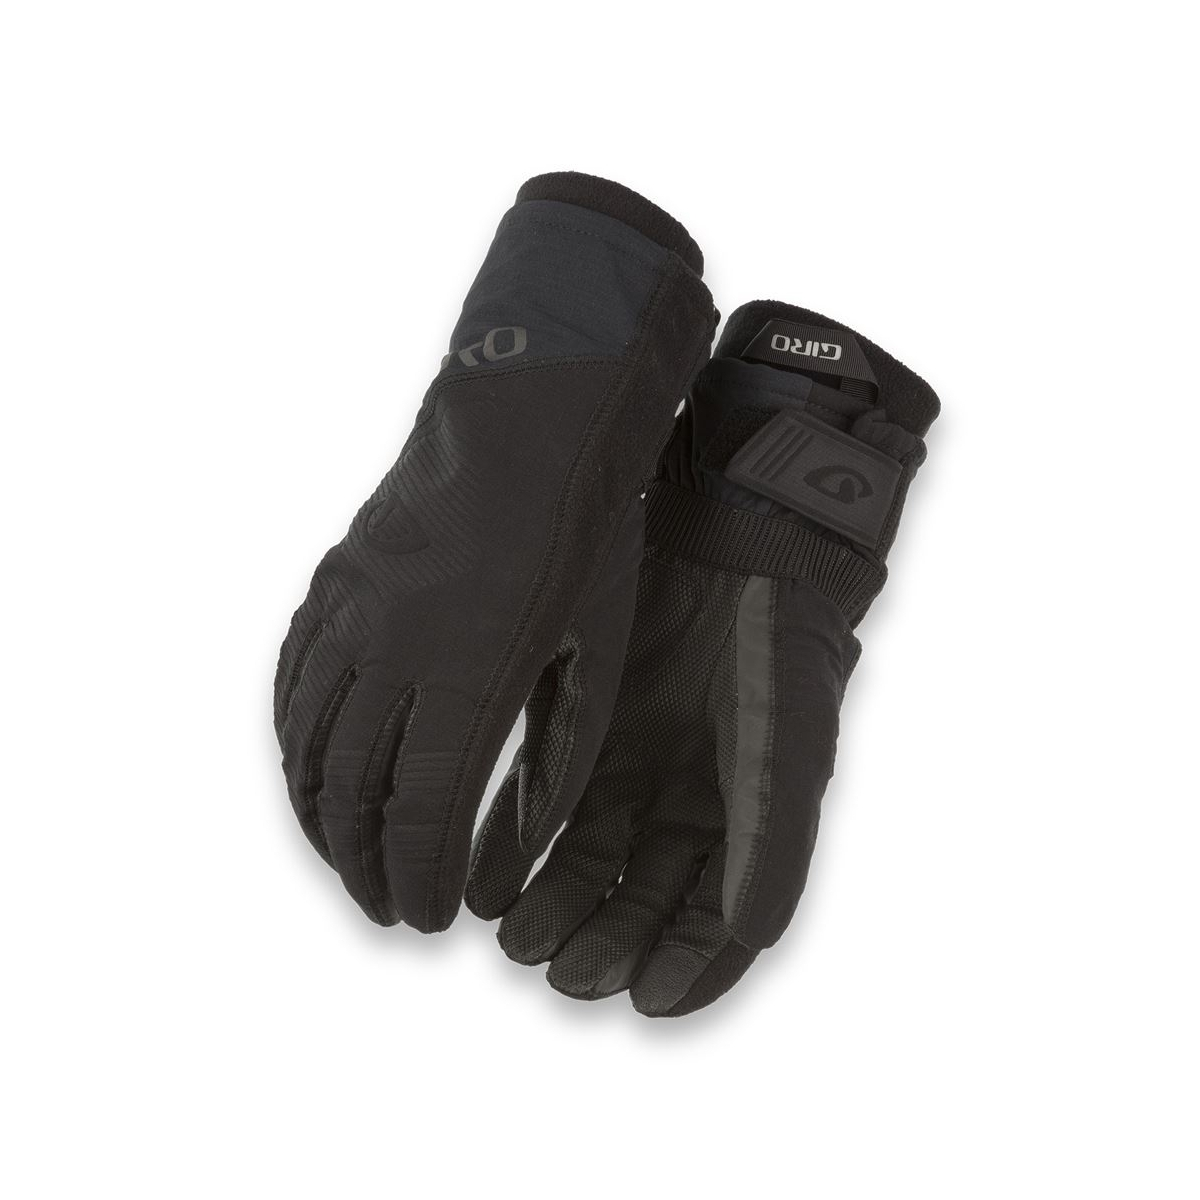 Rękawiczki zimowe GIRO 100 PROOF długi palec black